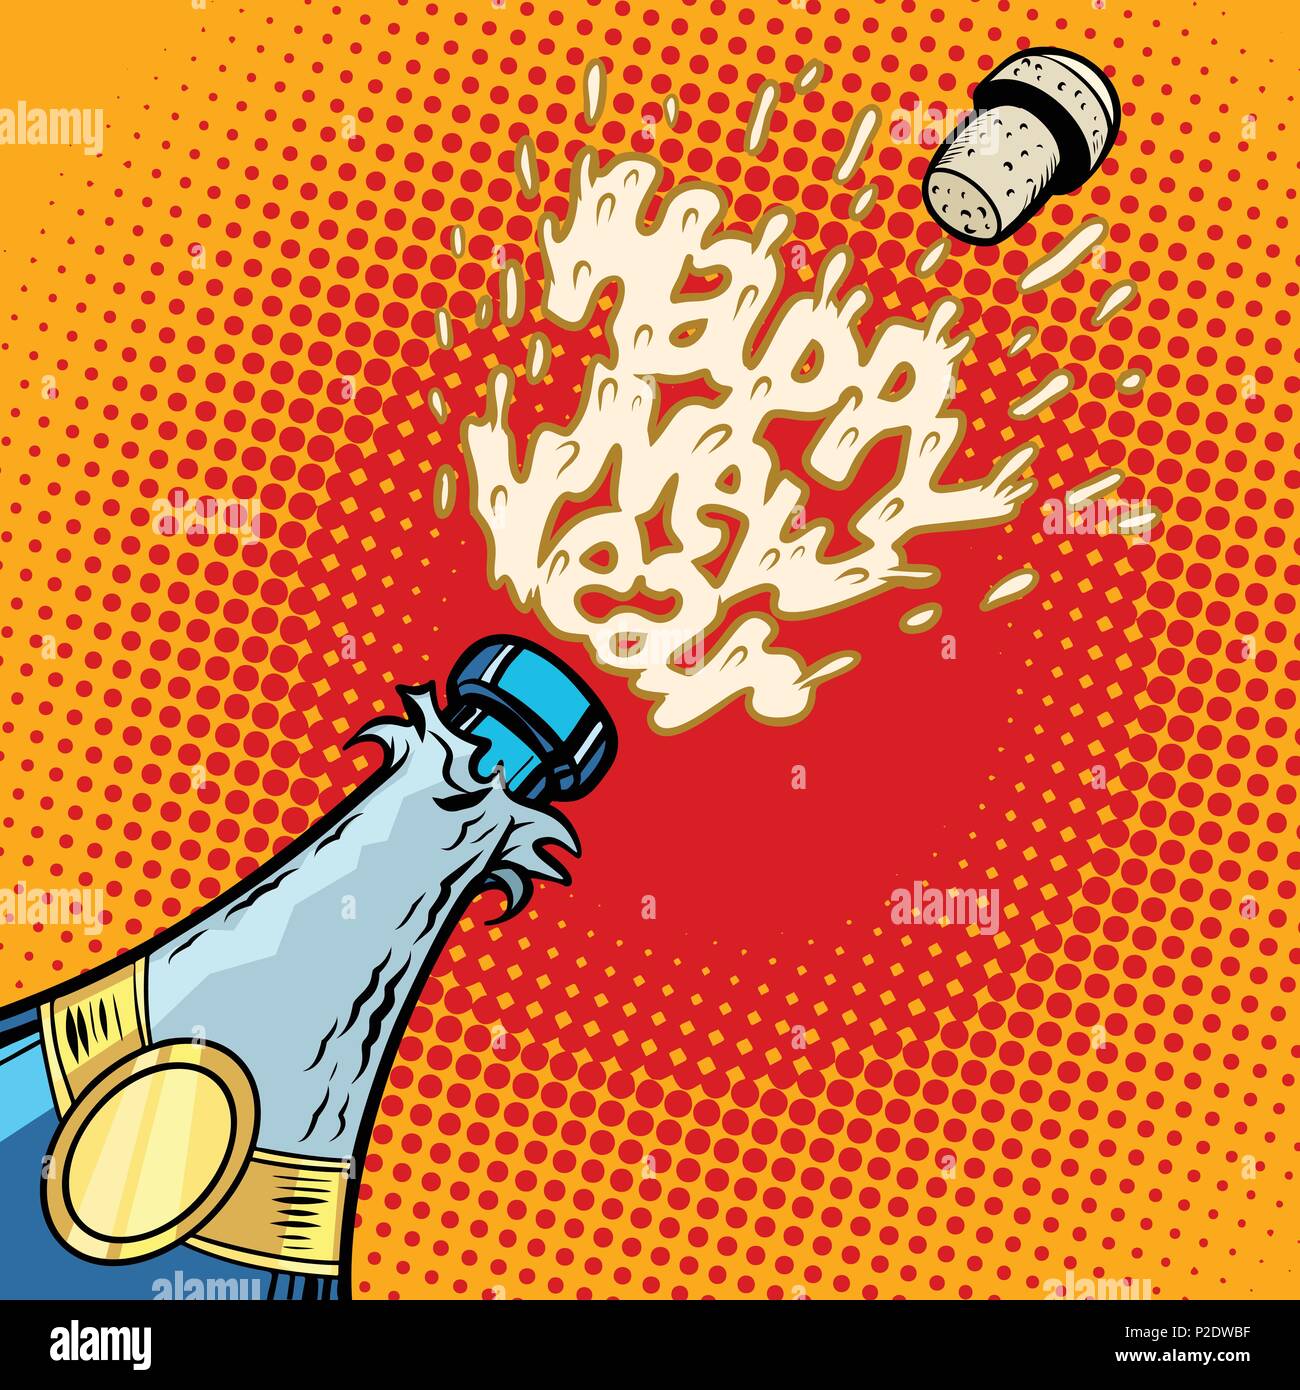 Botella de champán se abre, espuma y Cork. Comic cartoon pop art ilustración vector vintage retro kitsch dibujo Ilustración del Vector